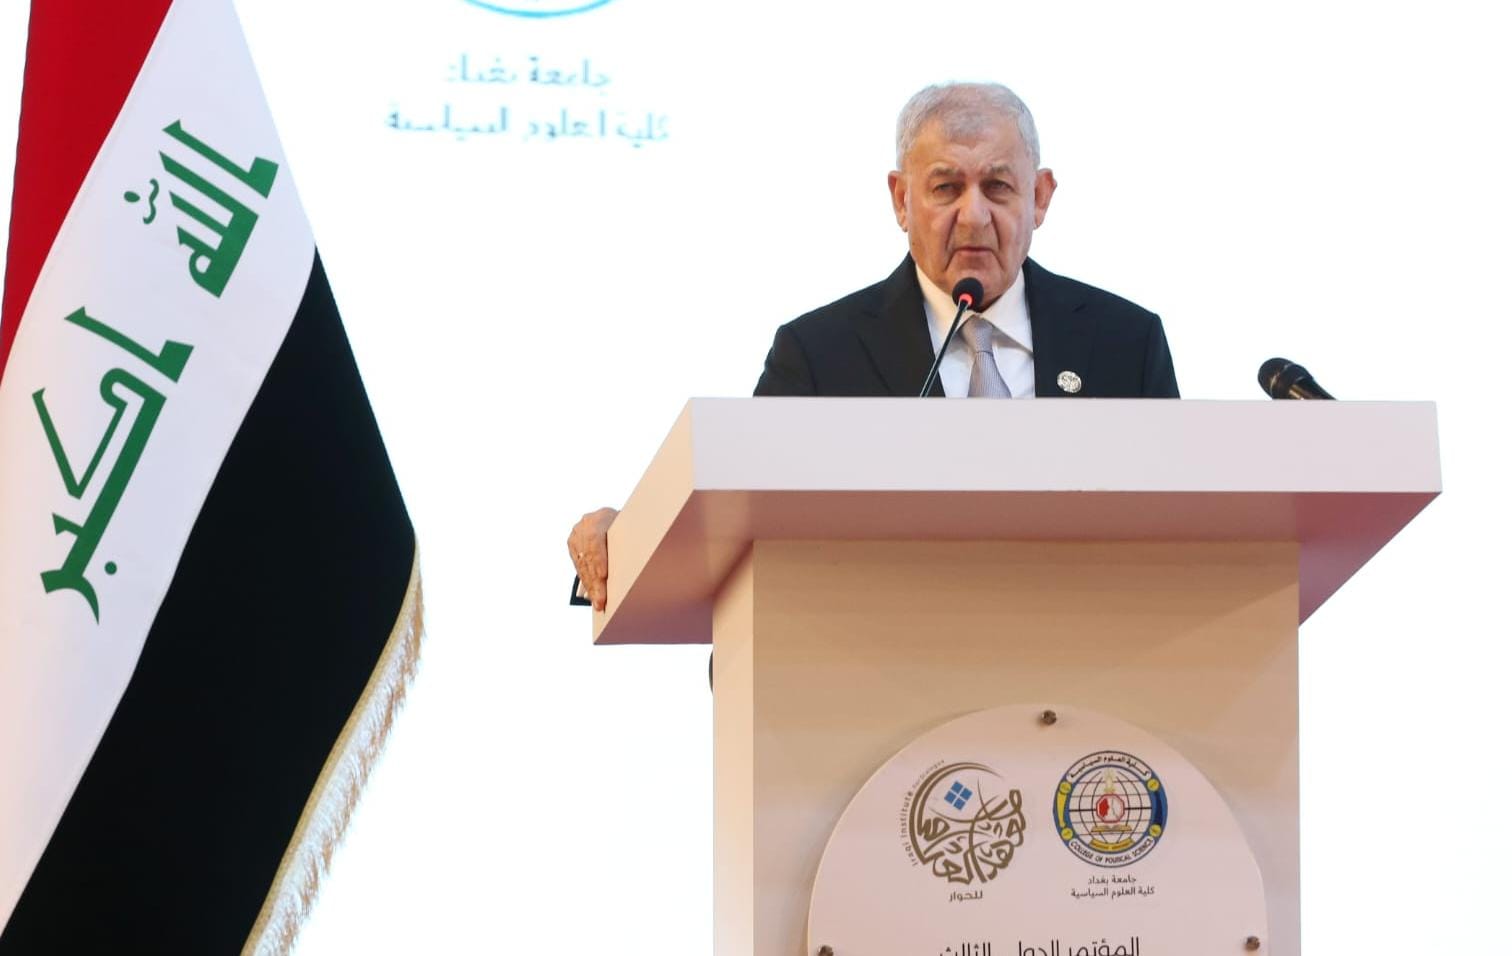 رئيس الجمهورية استهداف مدينة اربيل "يُعد انتهاكا للسيادة العراقية"